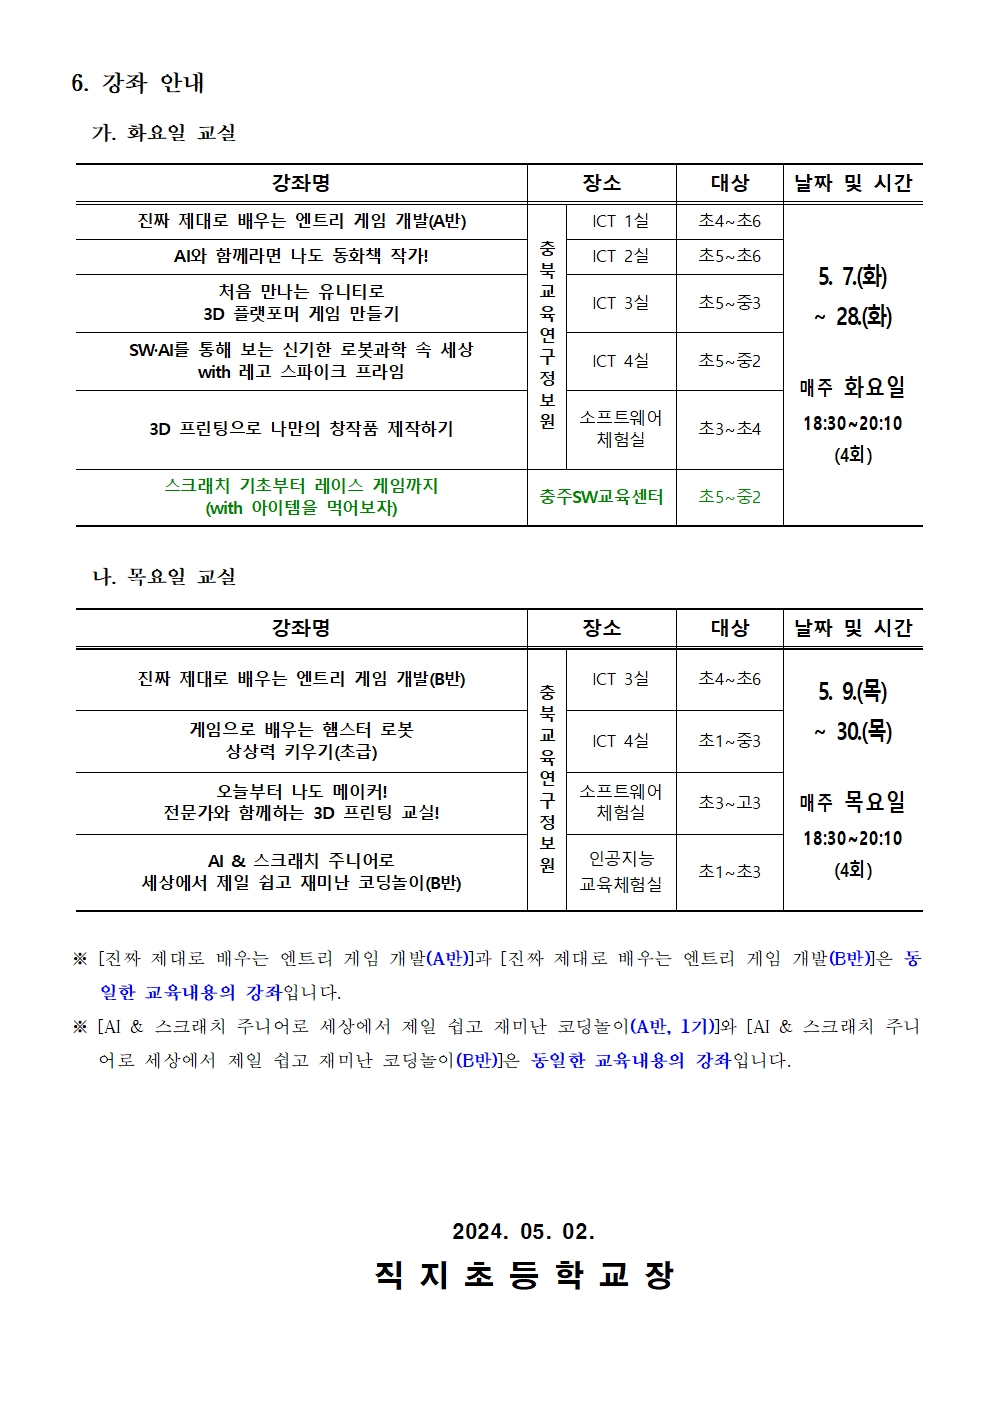 2024. 하굣길 SW·AI교실(2기) 추가 운영 안내 가정통신문002